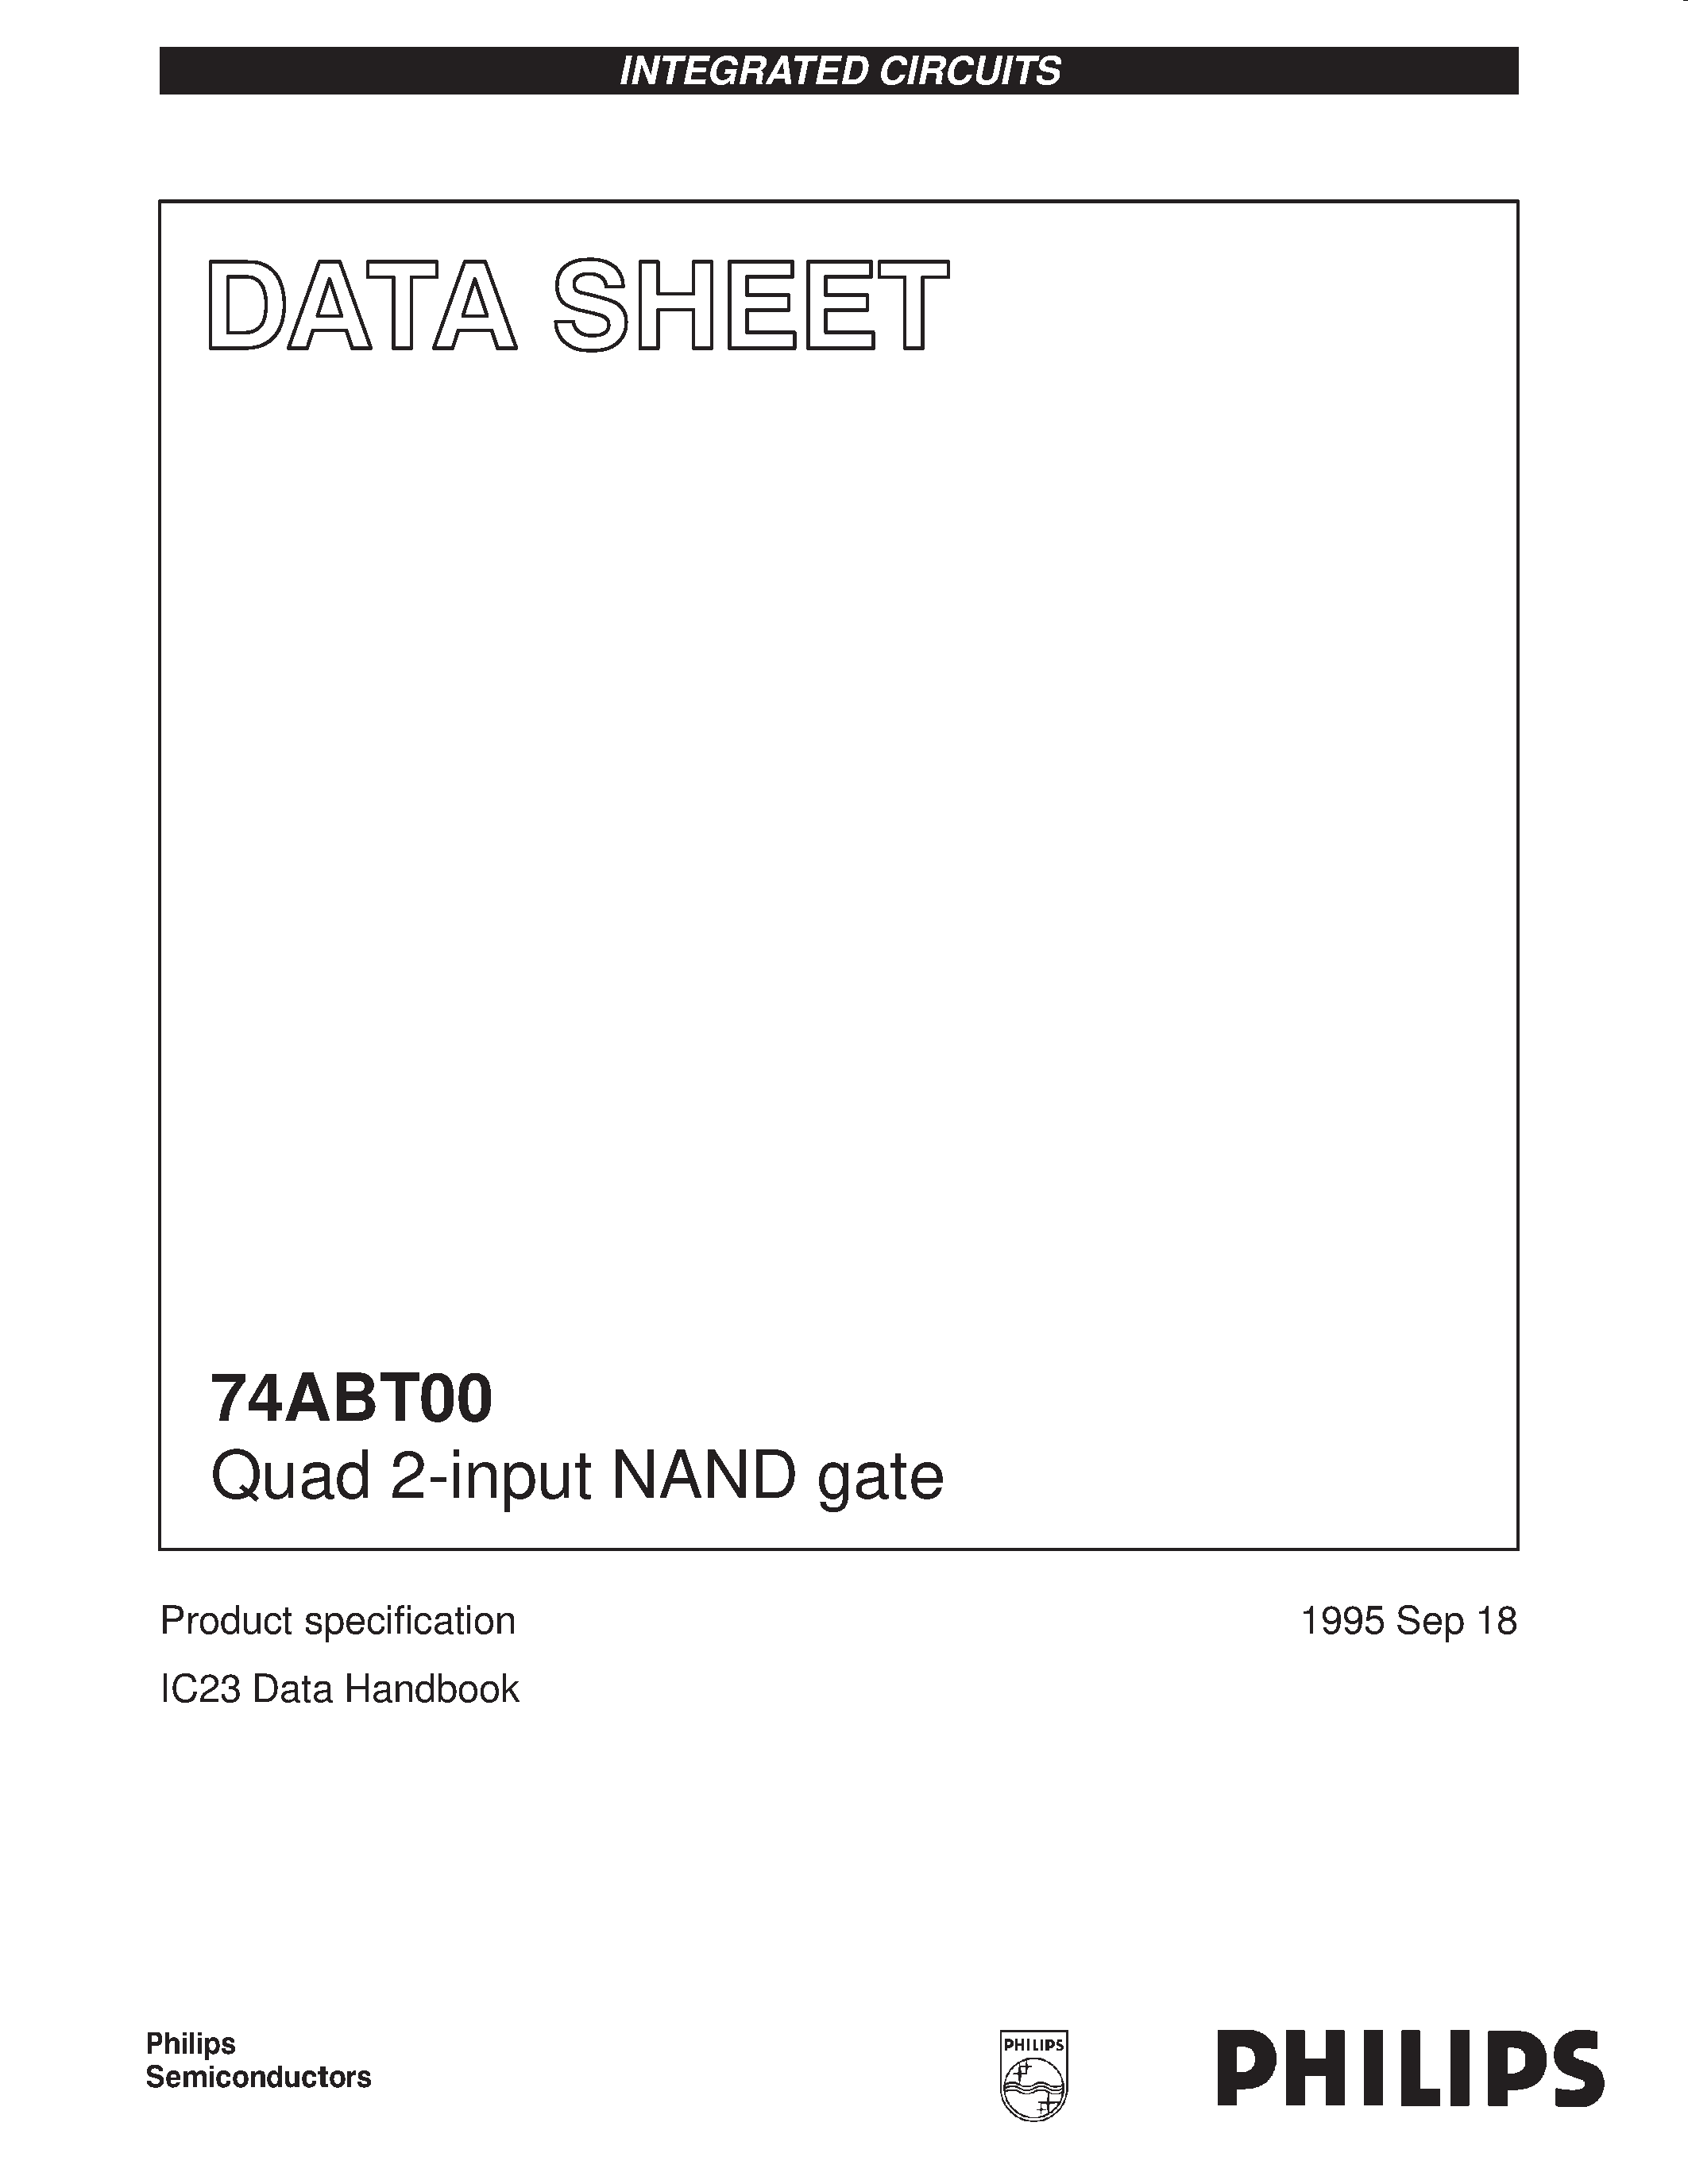 Даташит 74ABT00PWDH - Quad 2-input NAND gate страница 1